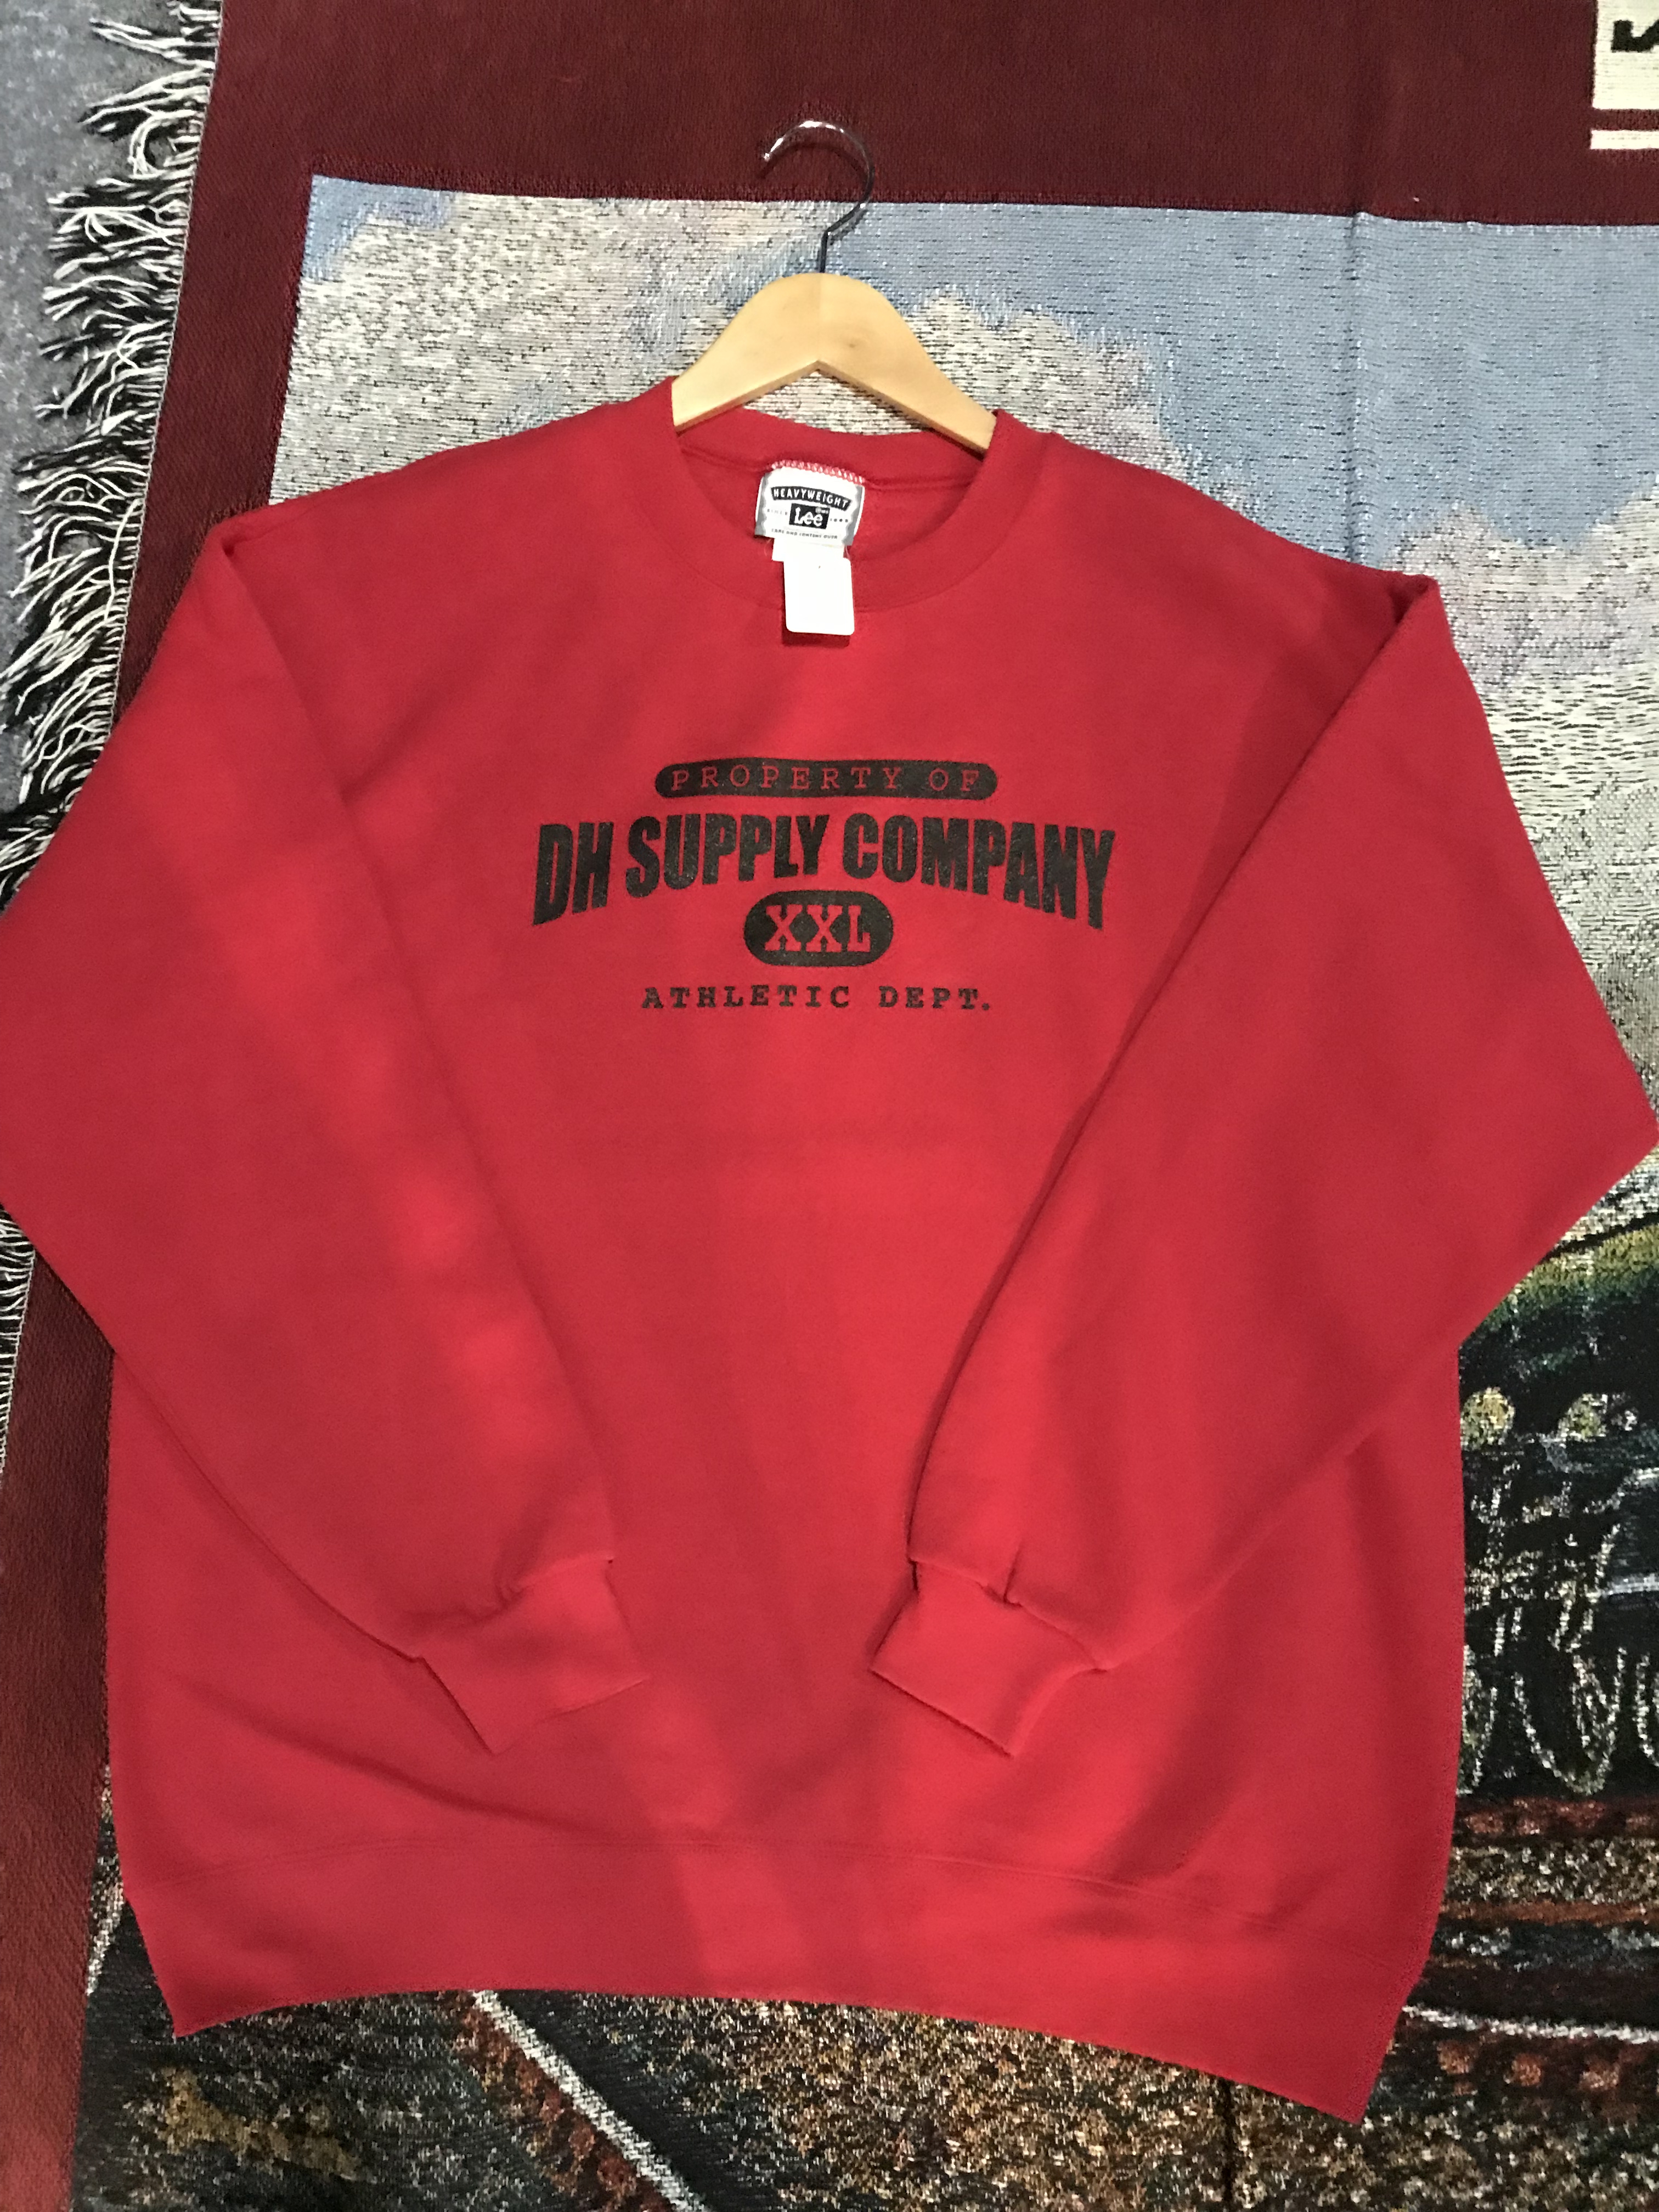 DH Supply Company スウェット